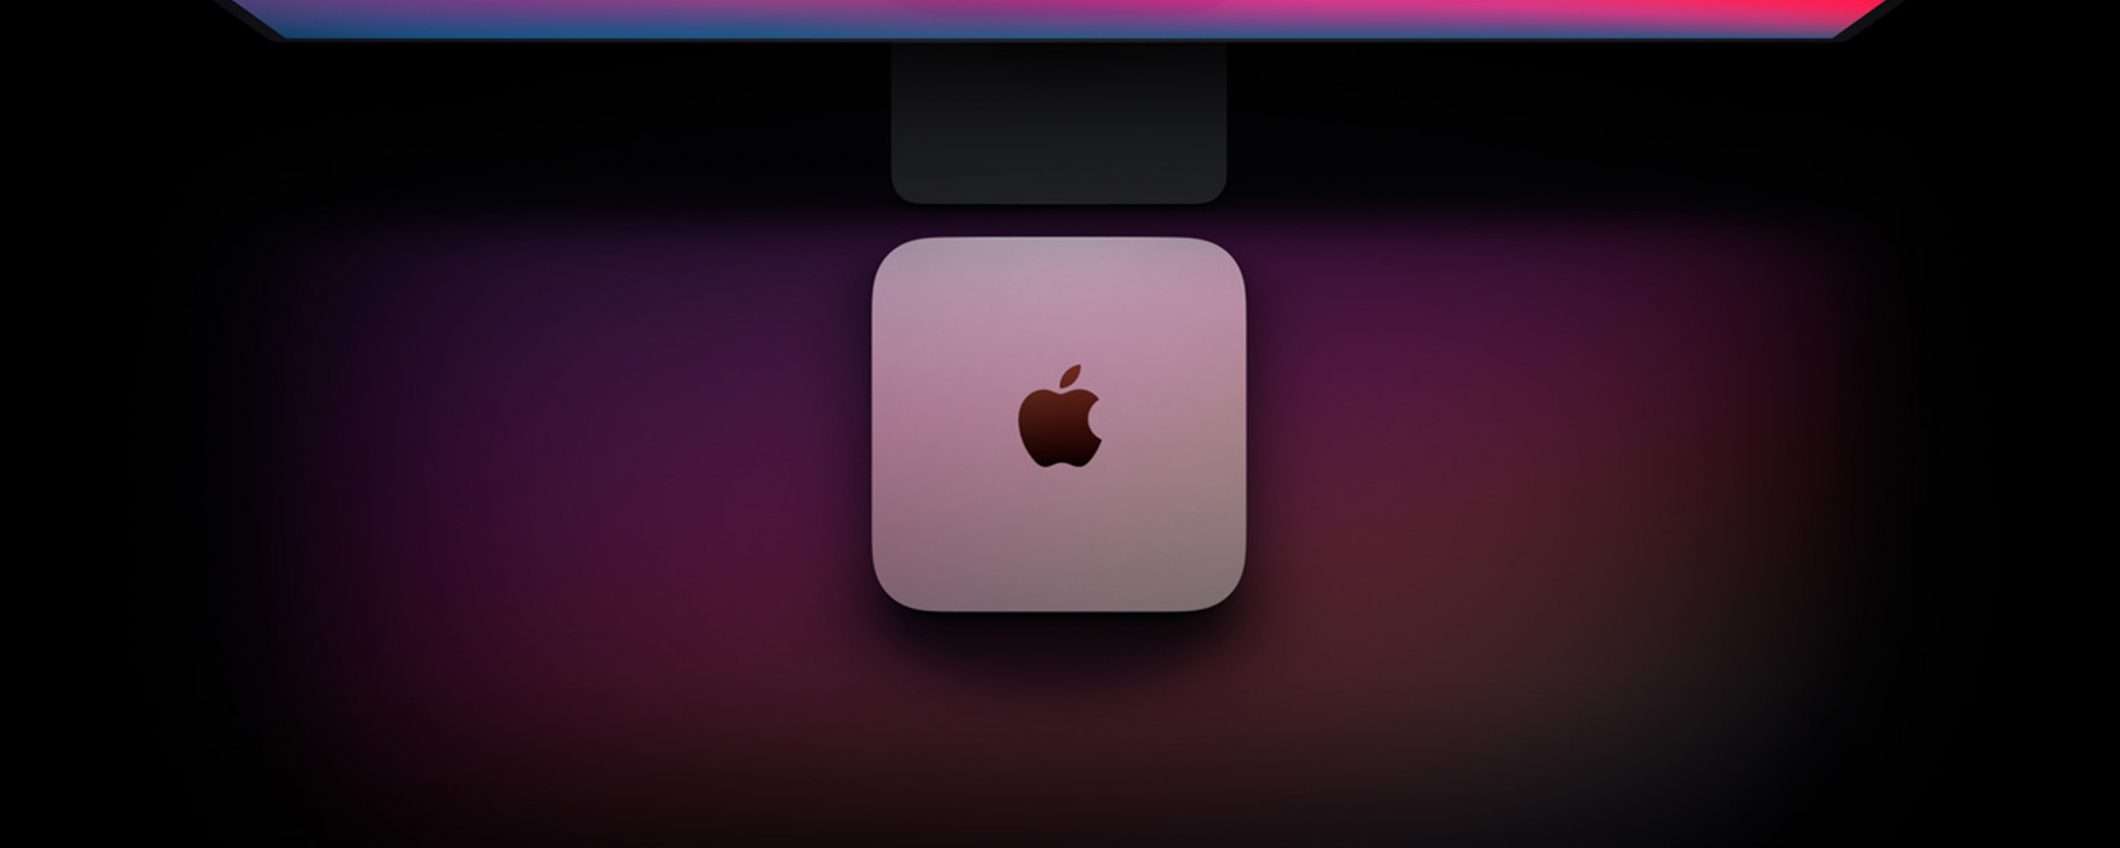 Mac mini con Apple M1 da 512 GB, prezzaccio Amazon